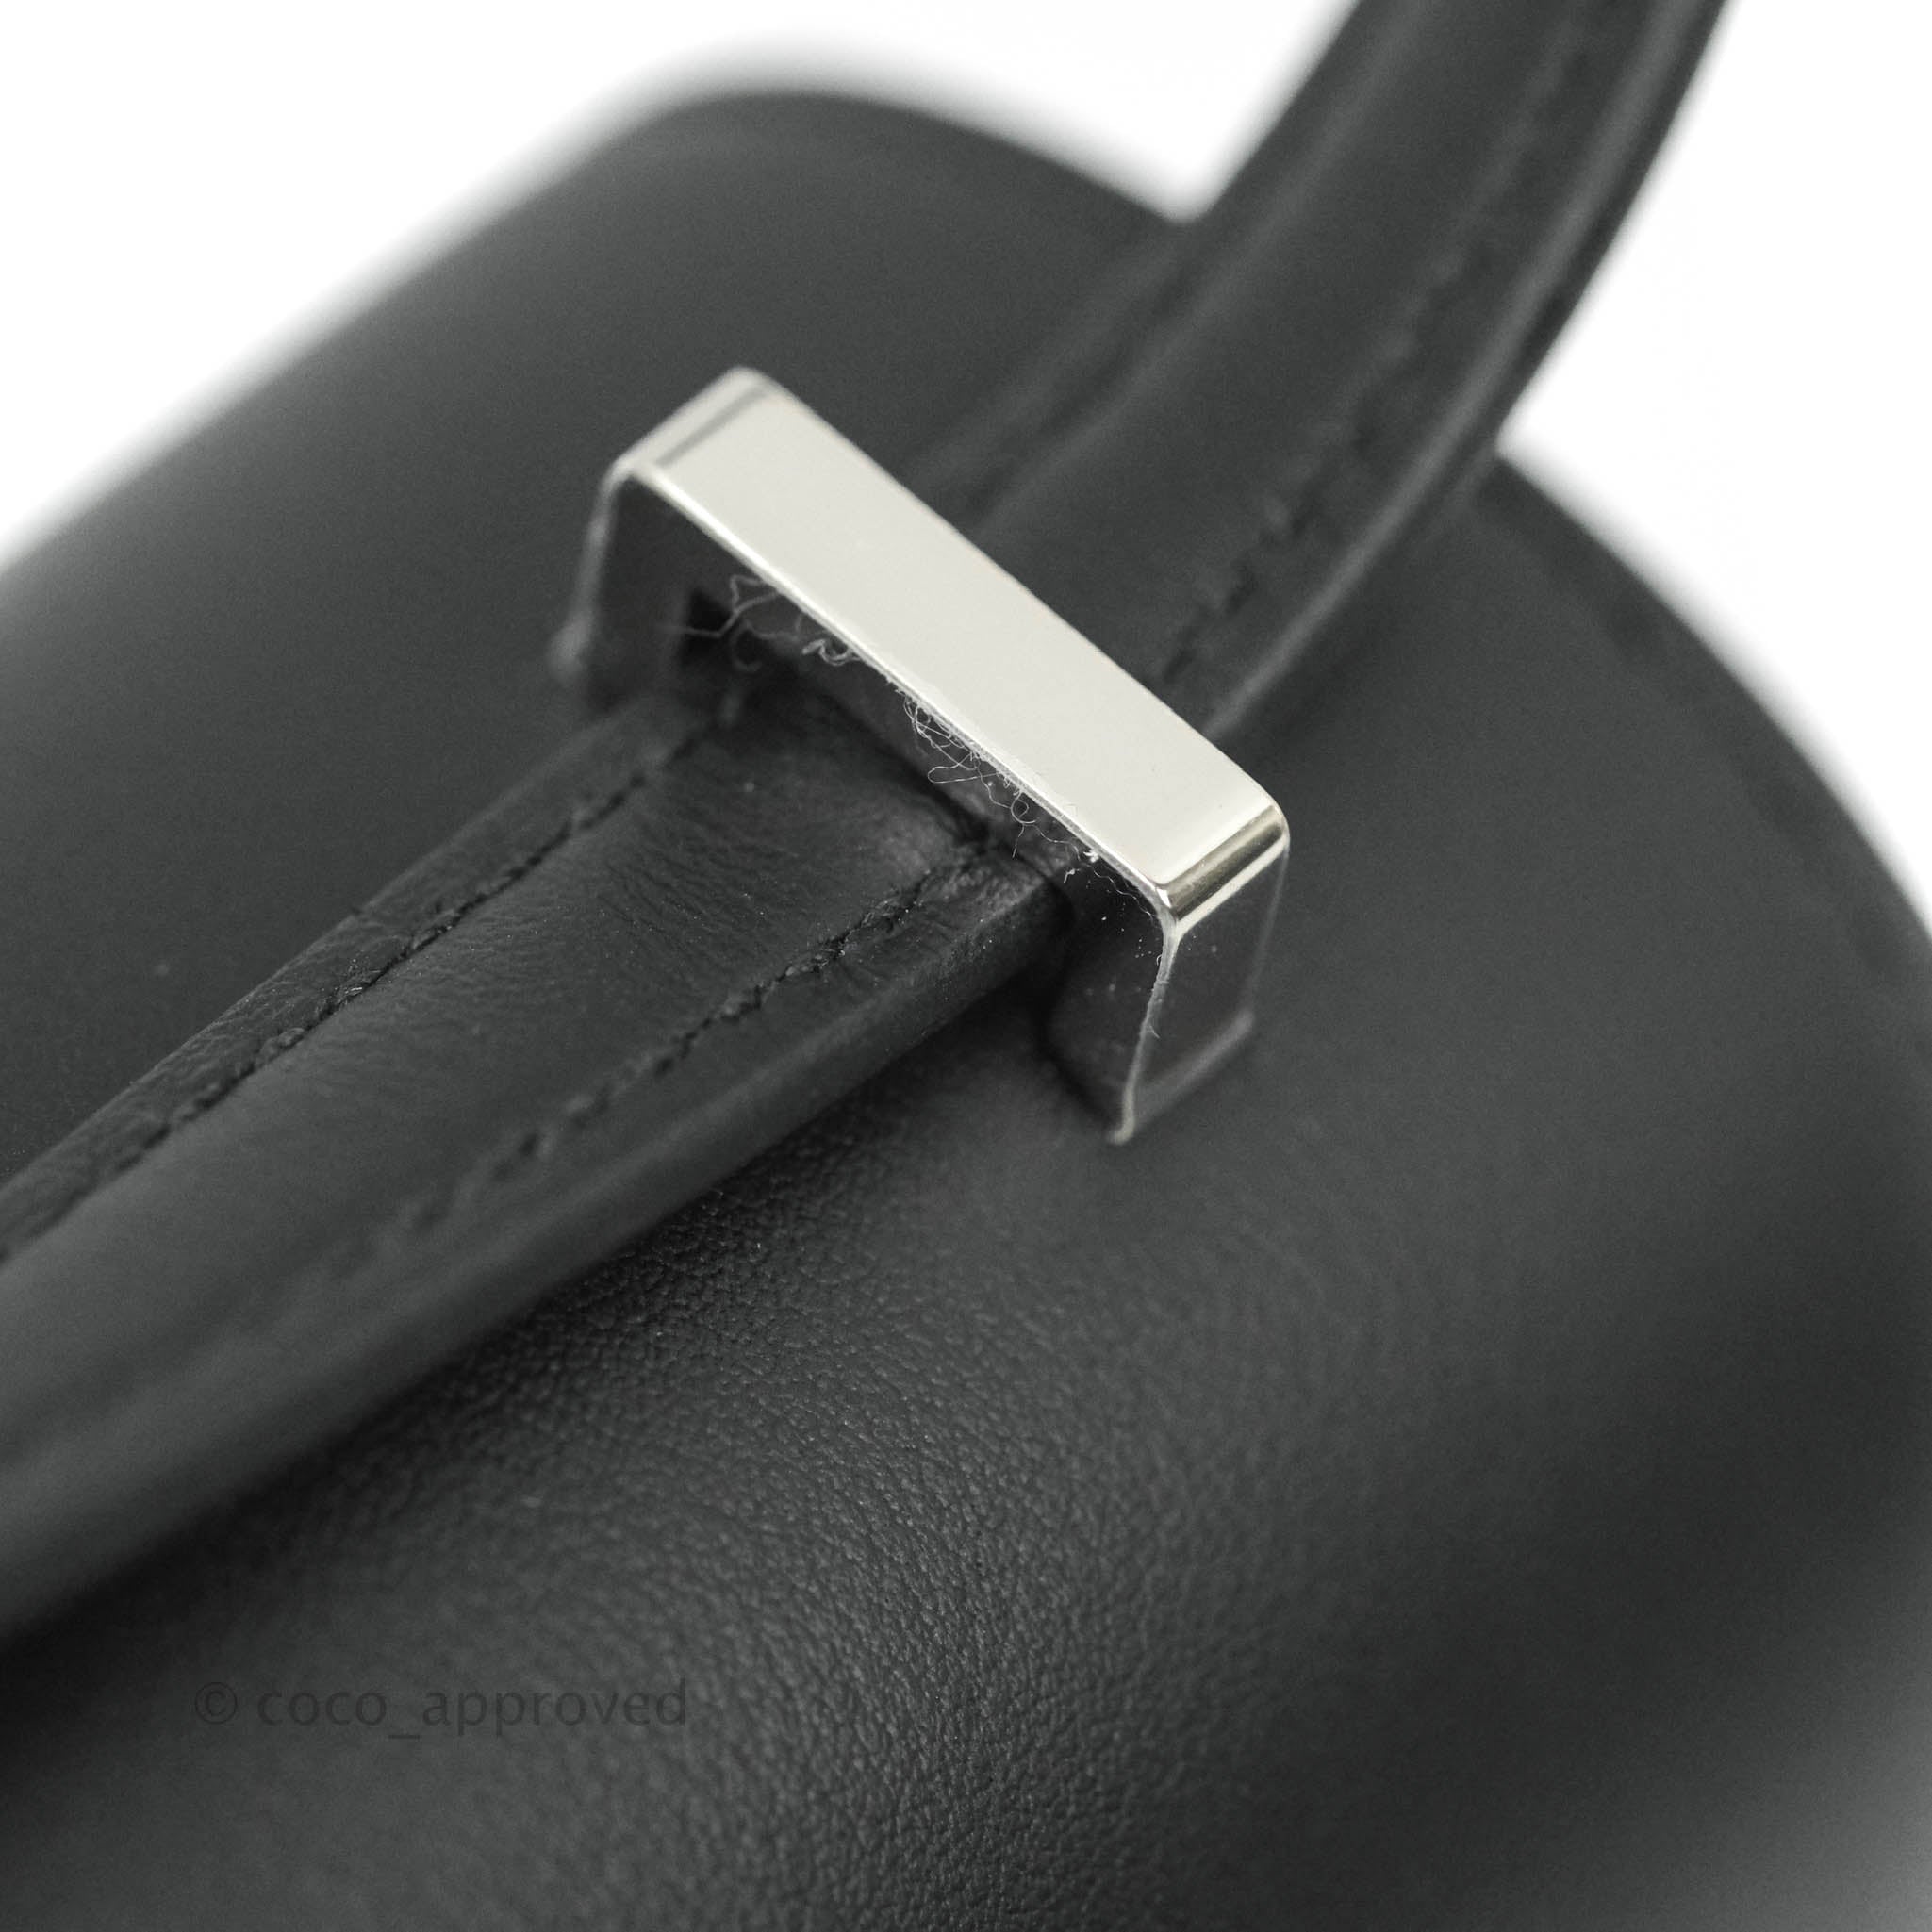 Hermès CONSTANCE 18 MINI MIRROR GRAY GRIS MEYER VEAU SWIFT LEATHER BAG –  Miami Lux Boutique